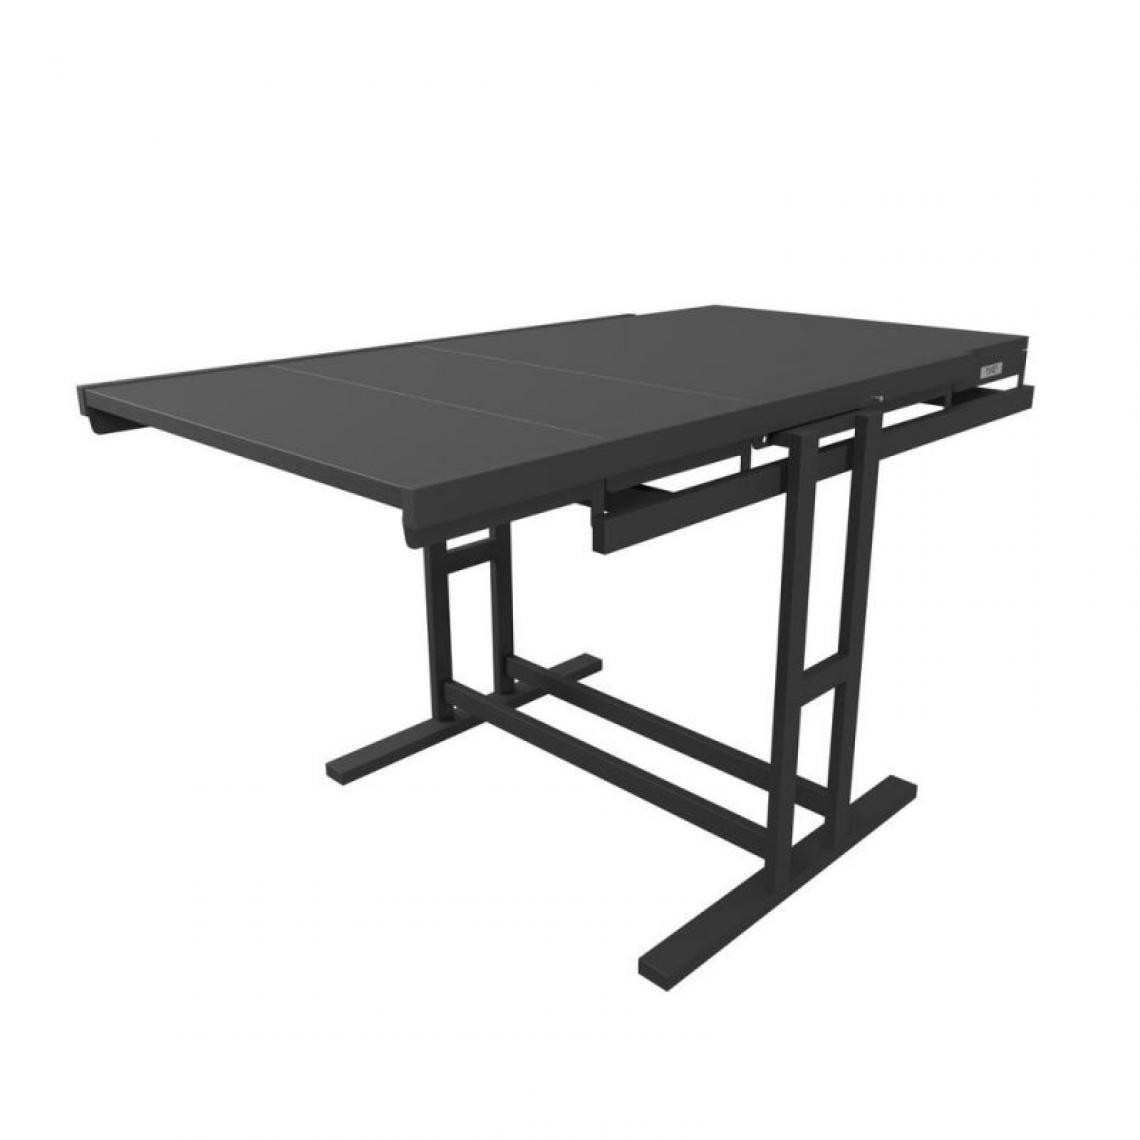 Blumie - Table modulable (L140 x l80 x H77 cm) convertible en Etagère - style industriel - Tables à manger